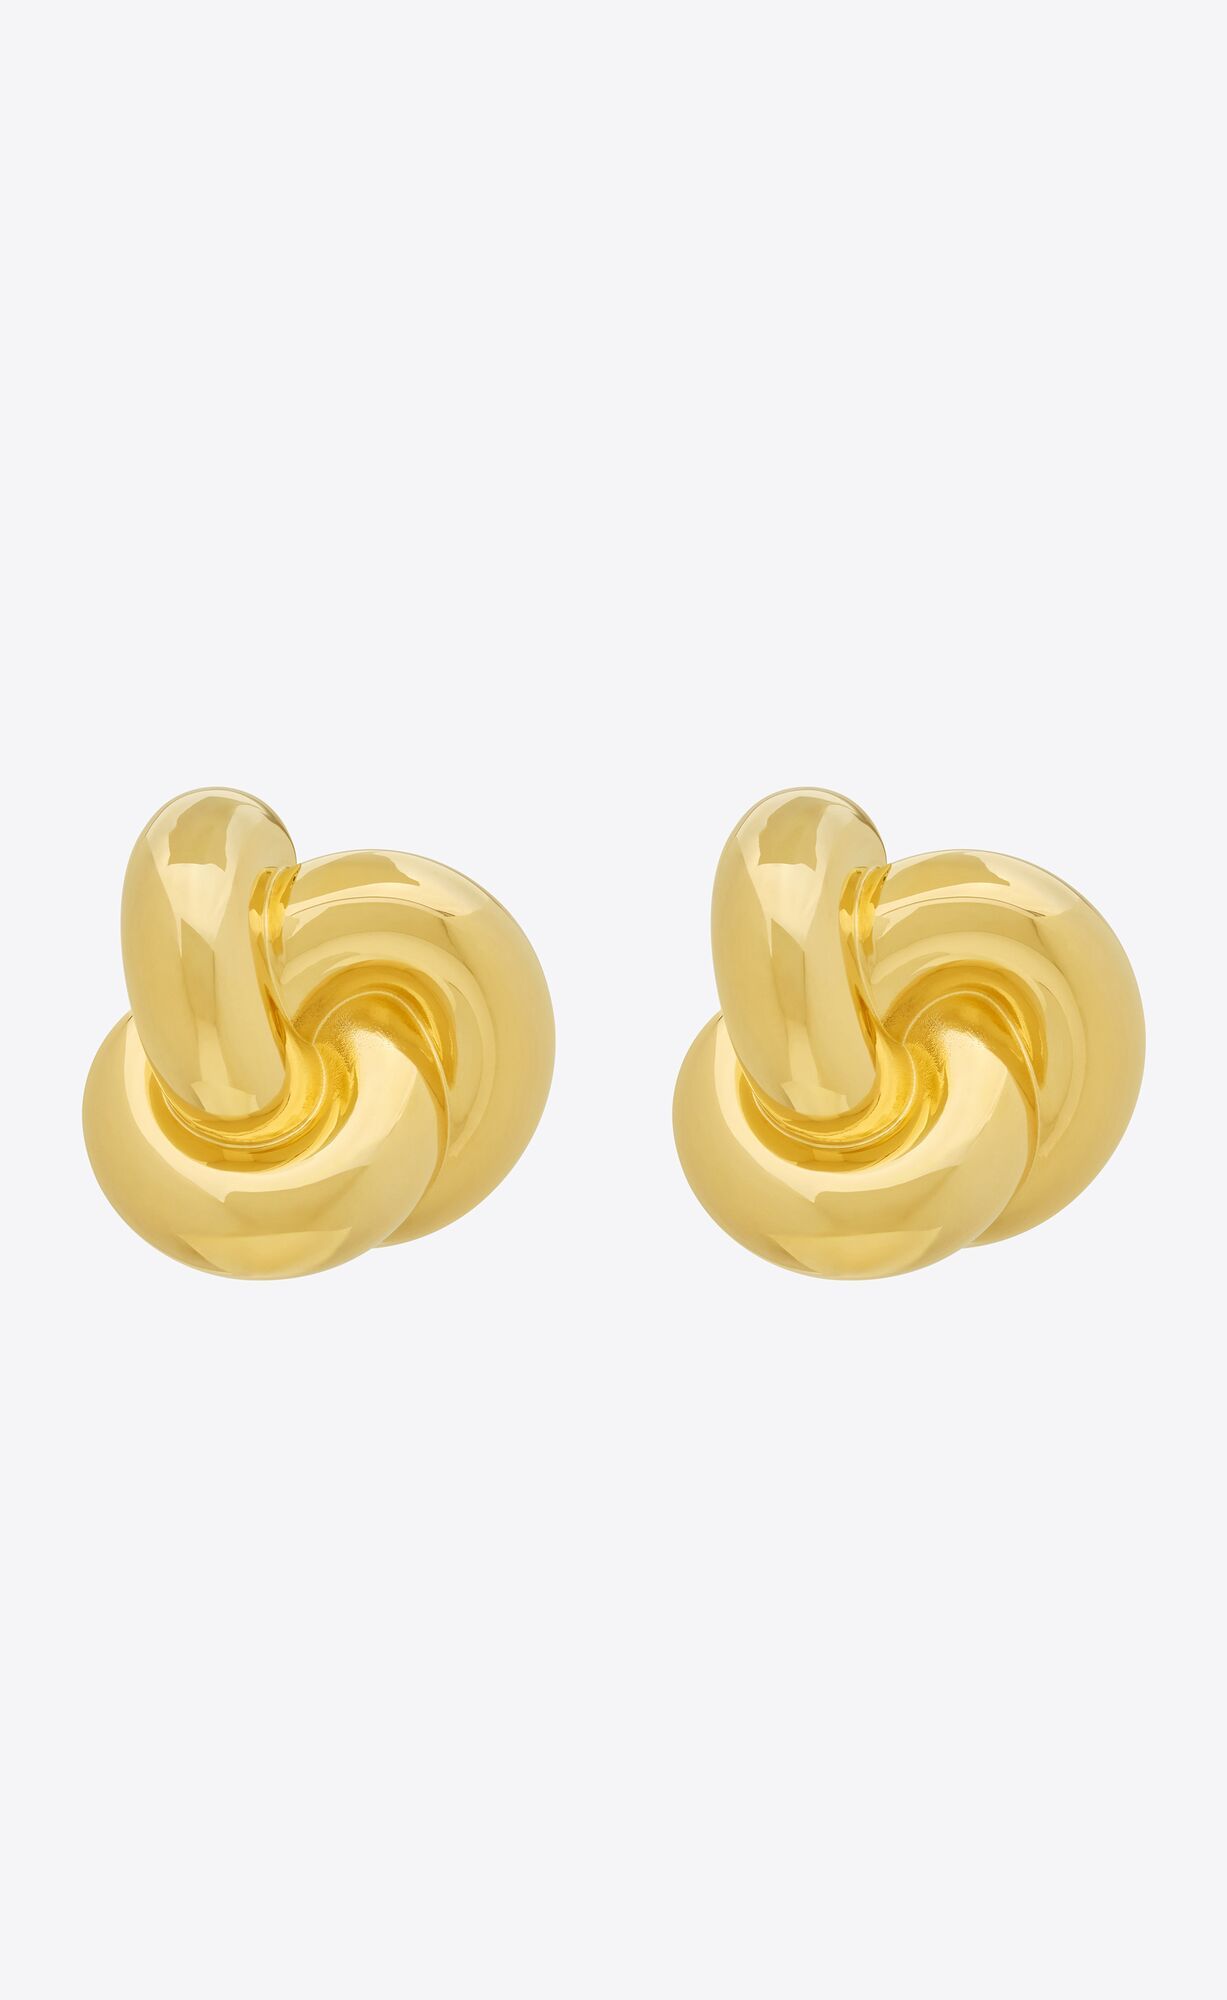 knot earrings in metal | Saint Laurent Inc. (Global)